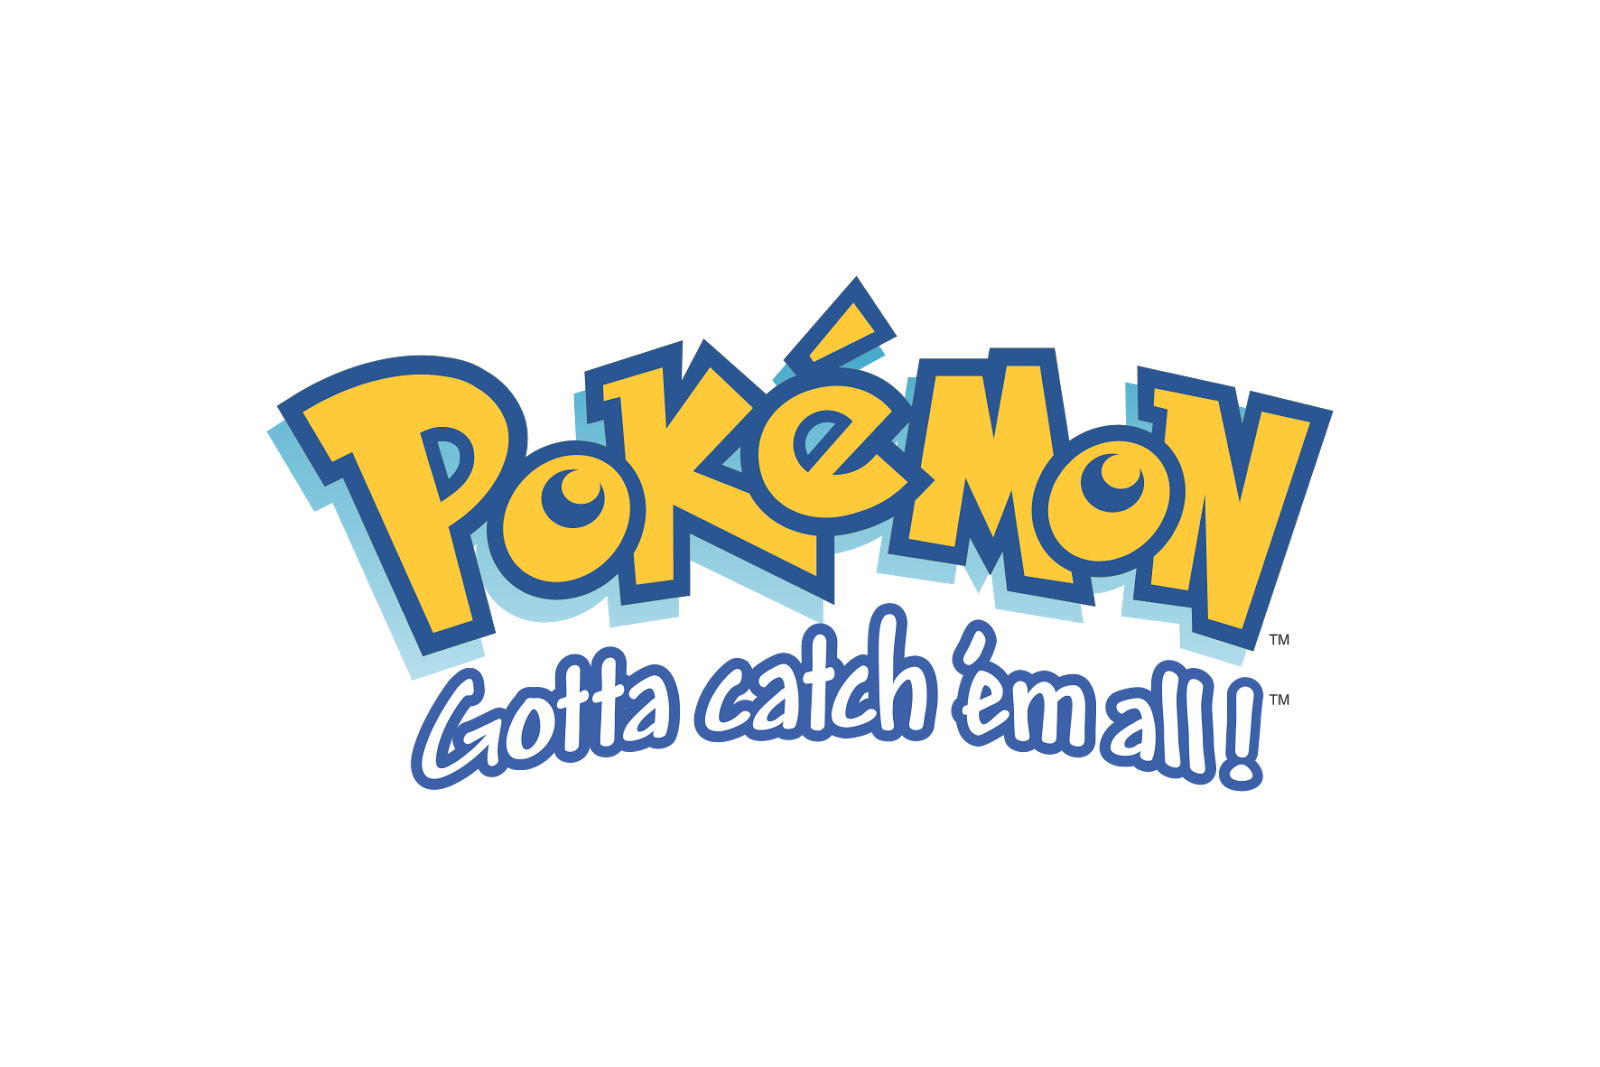 Pokemon Logo - Pokémon Logo catch 'em all!. Pokémon Logos